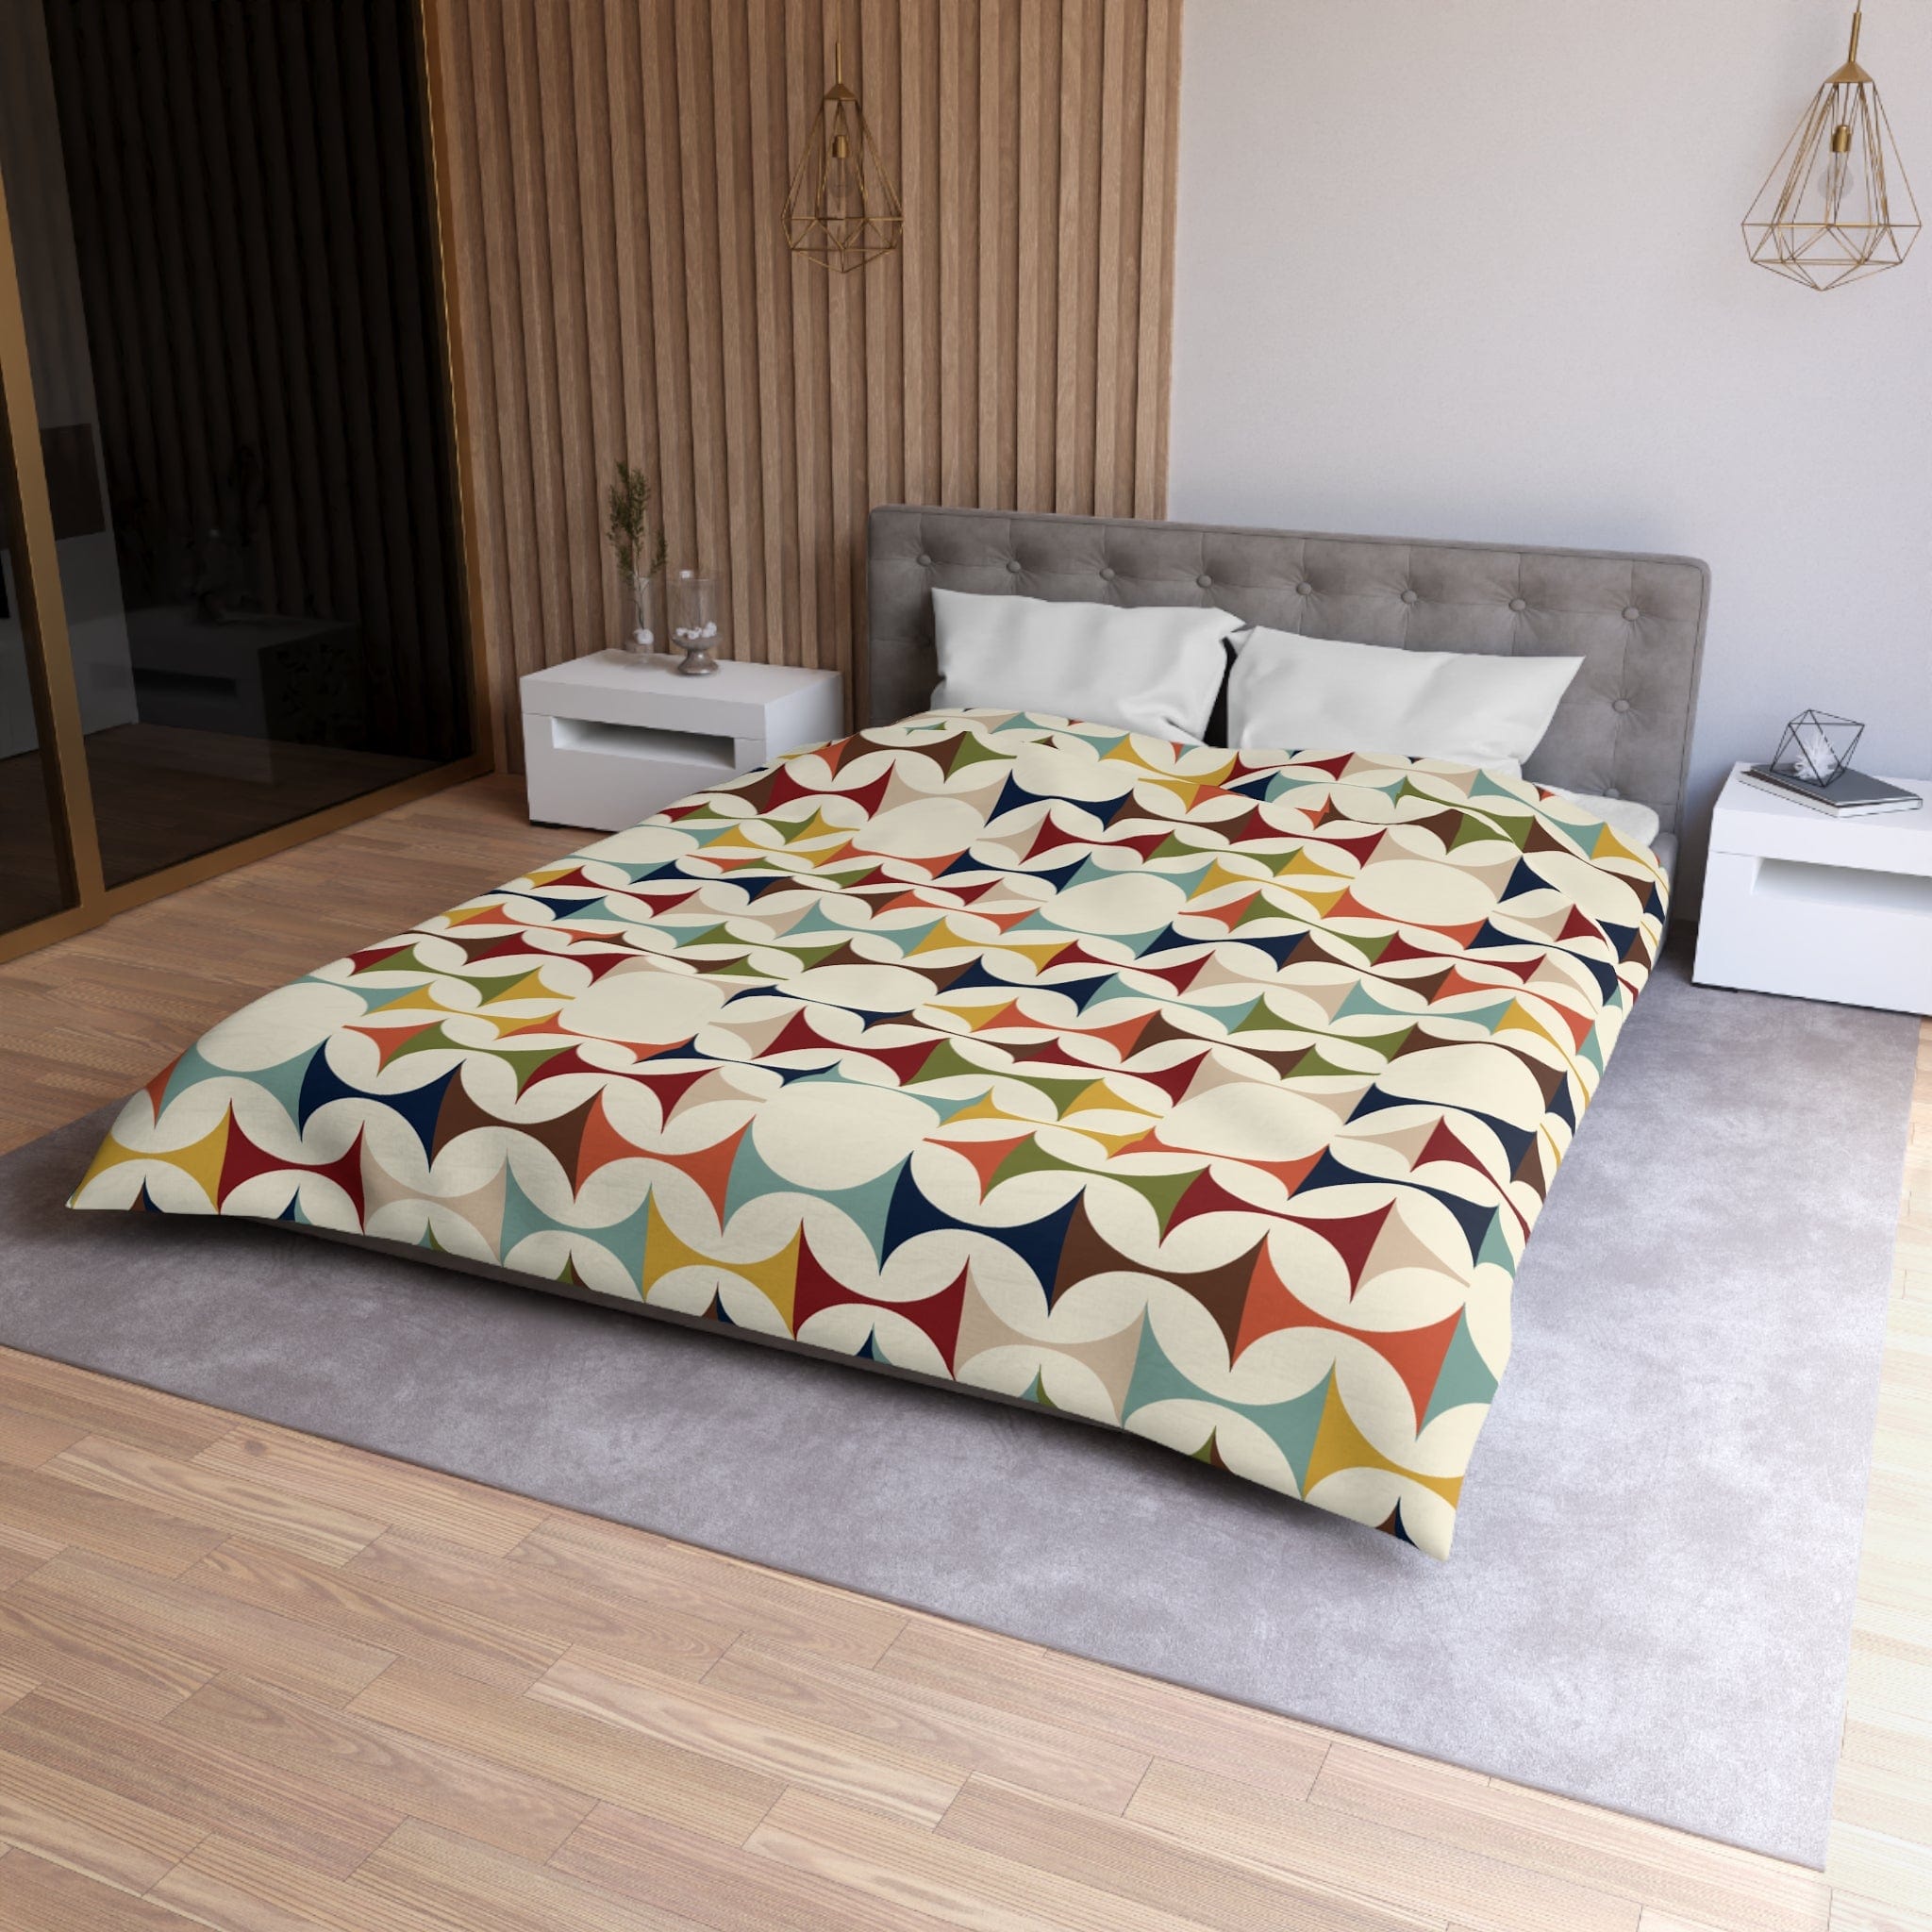 Kate McEnroe New York Retro MCM Duvet Cover, Mid Century Modern Bedding, Vibrant Geometric Scandinavian Modern Danish Bed DecorDuvet Covers10731289768797466115